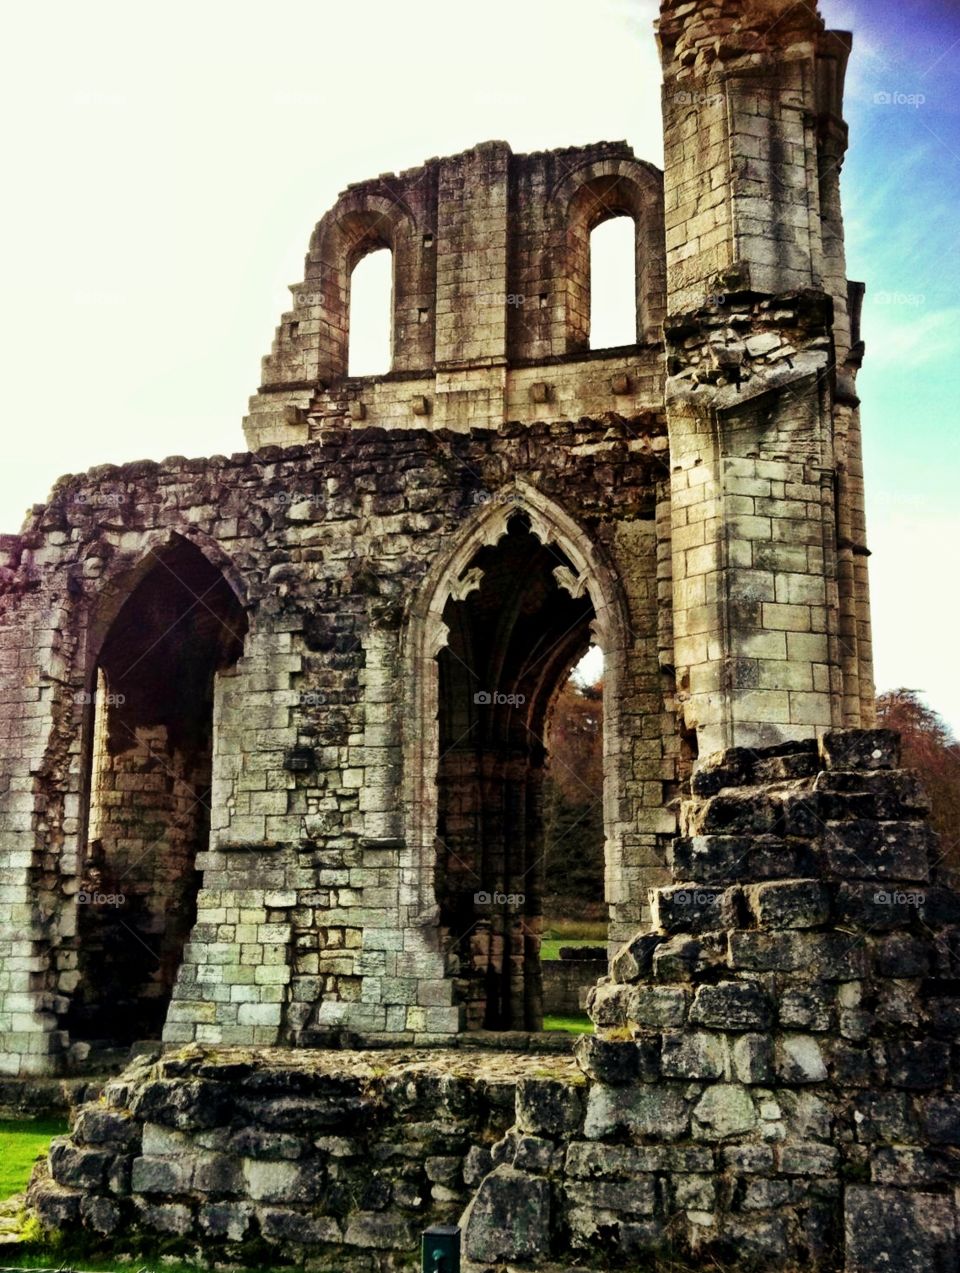 Roche abbey ruins
